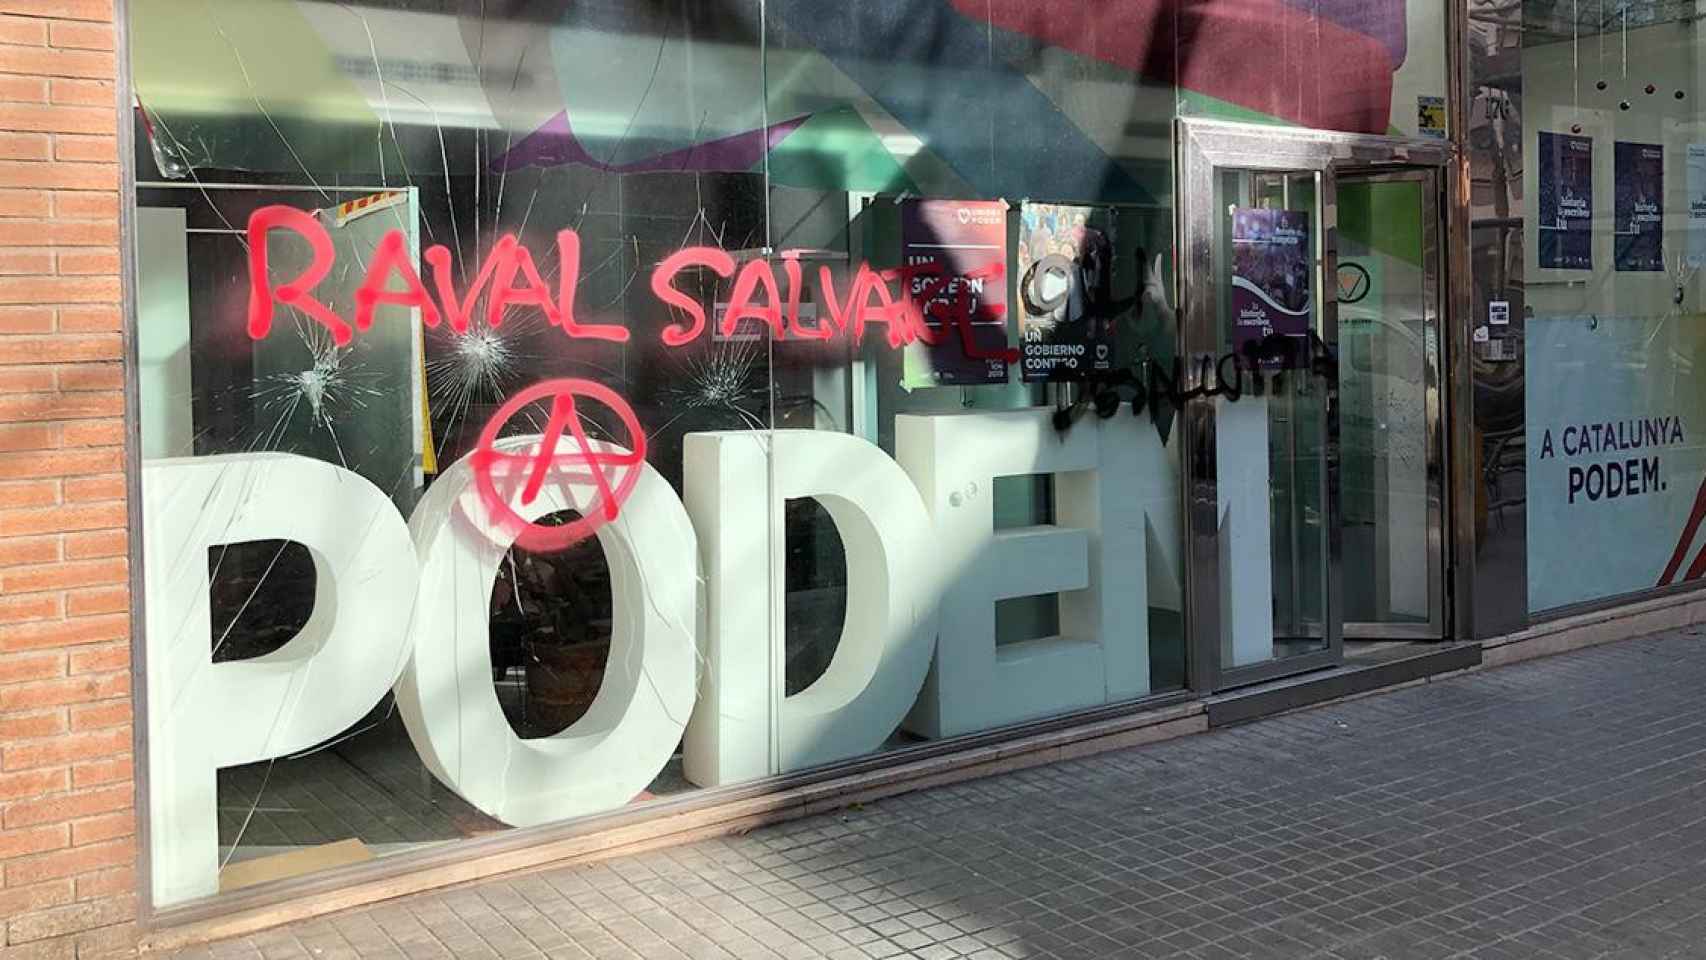 La sede de Podem Catalunya, vandalizada / CG